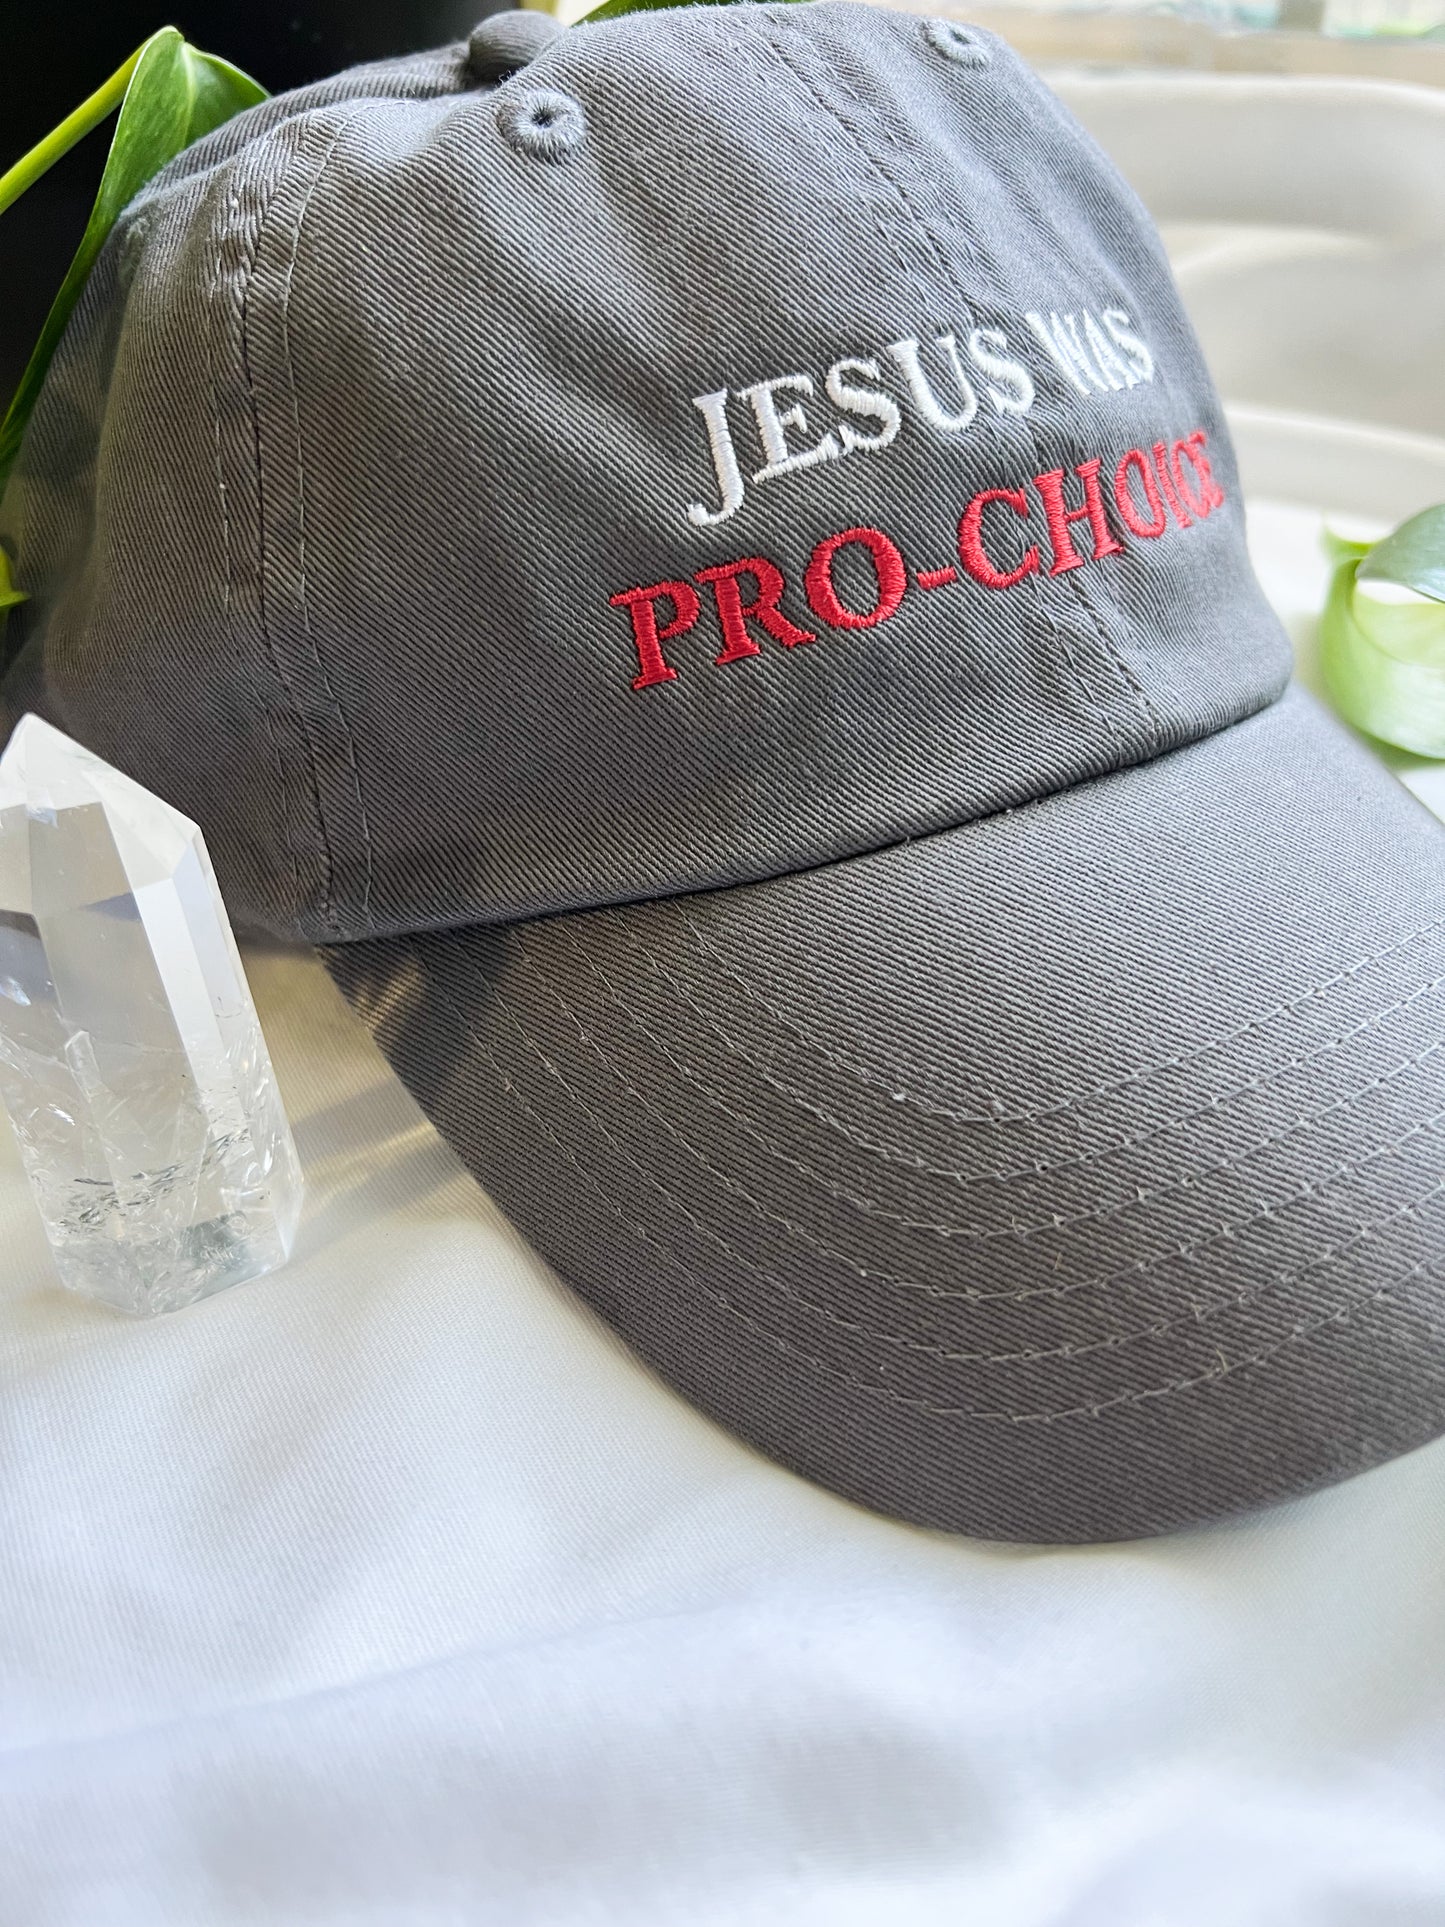 jesus was pro-choice cap PREORDER